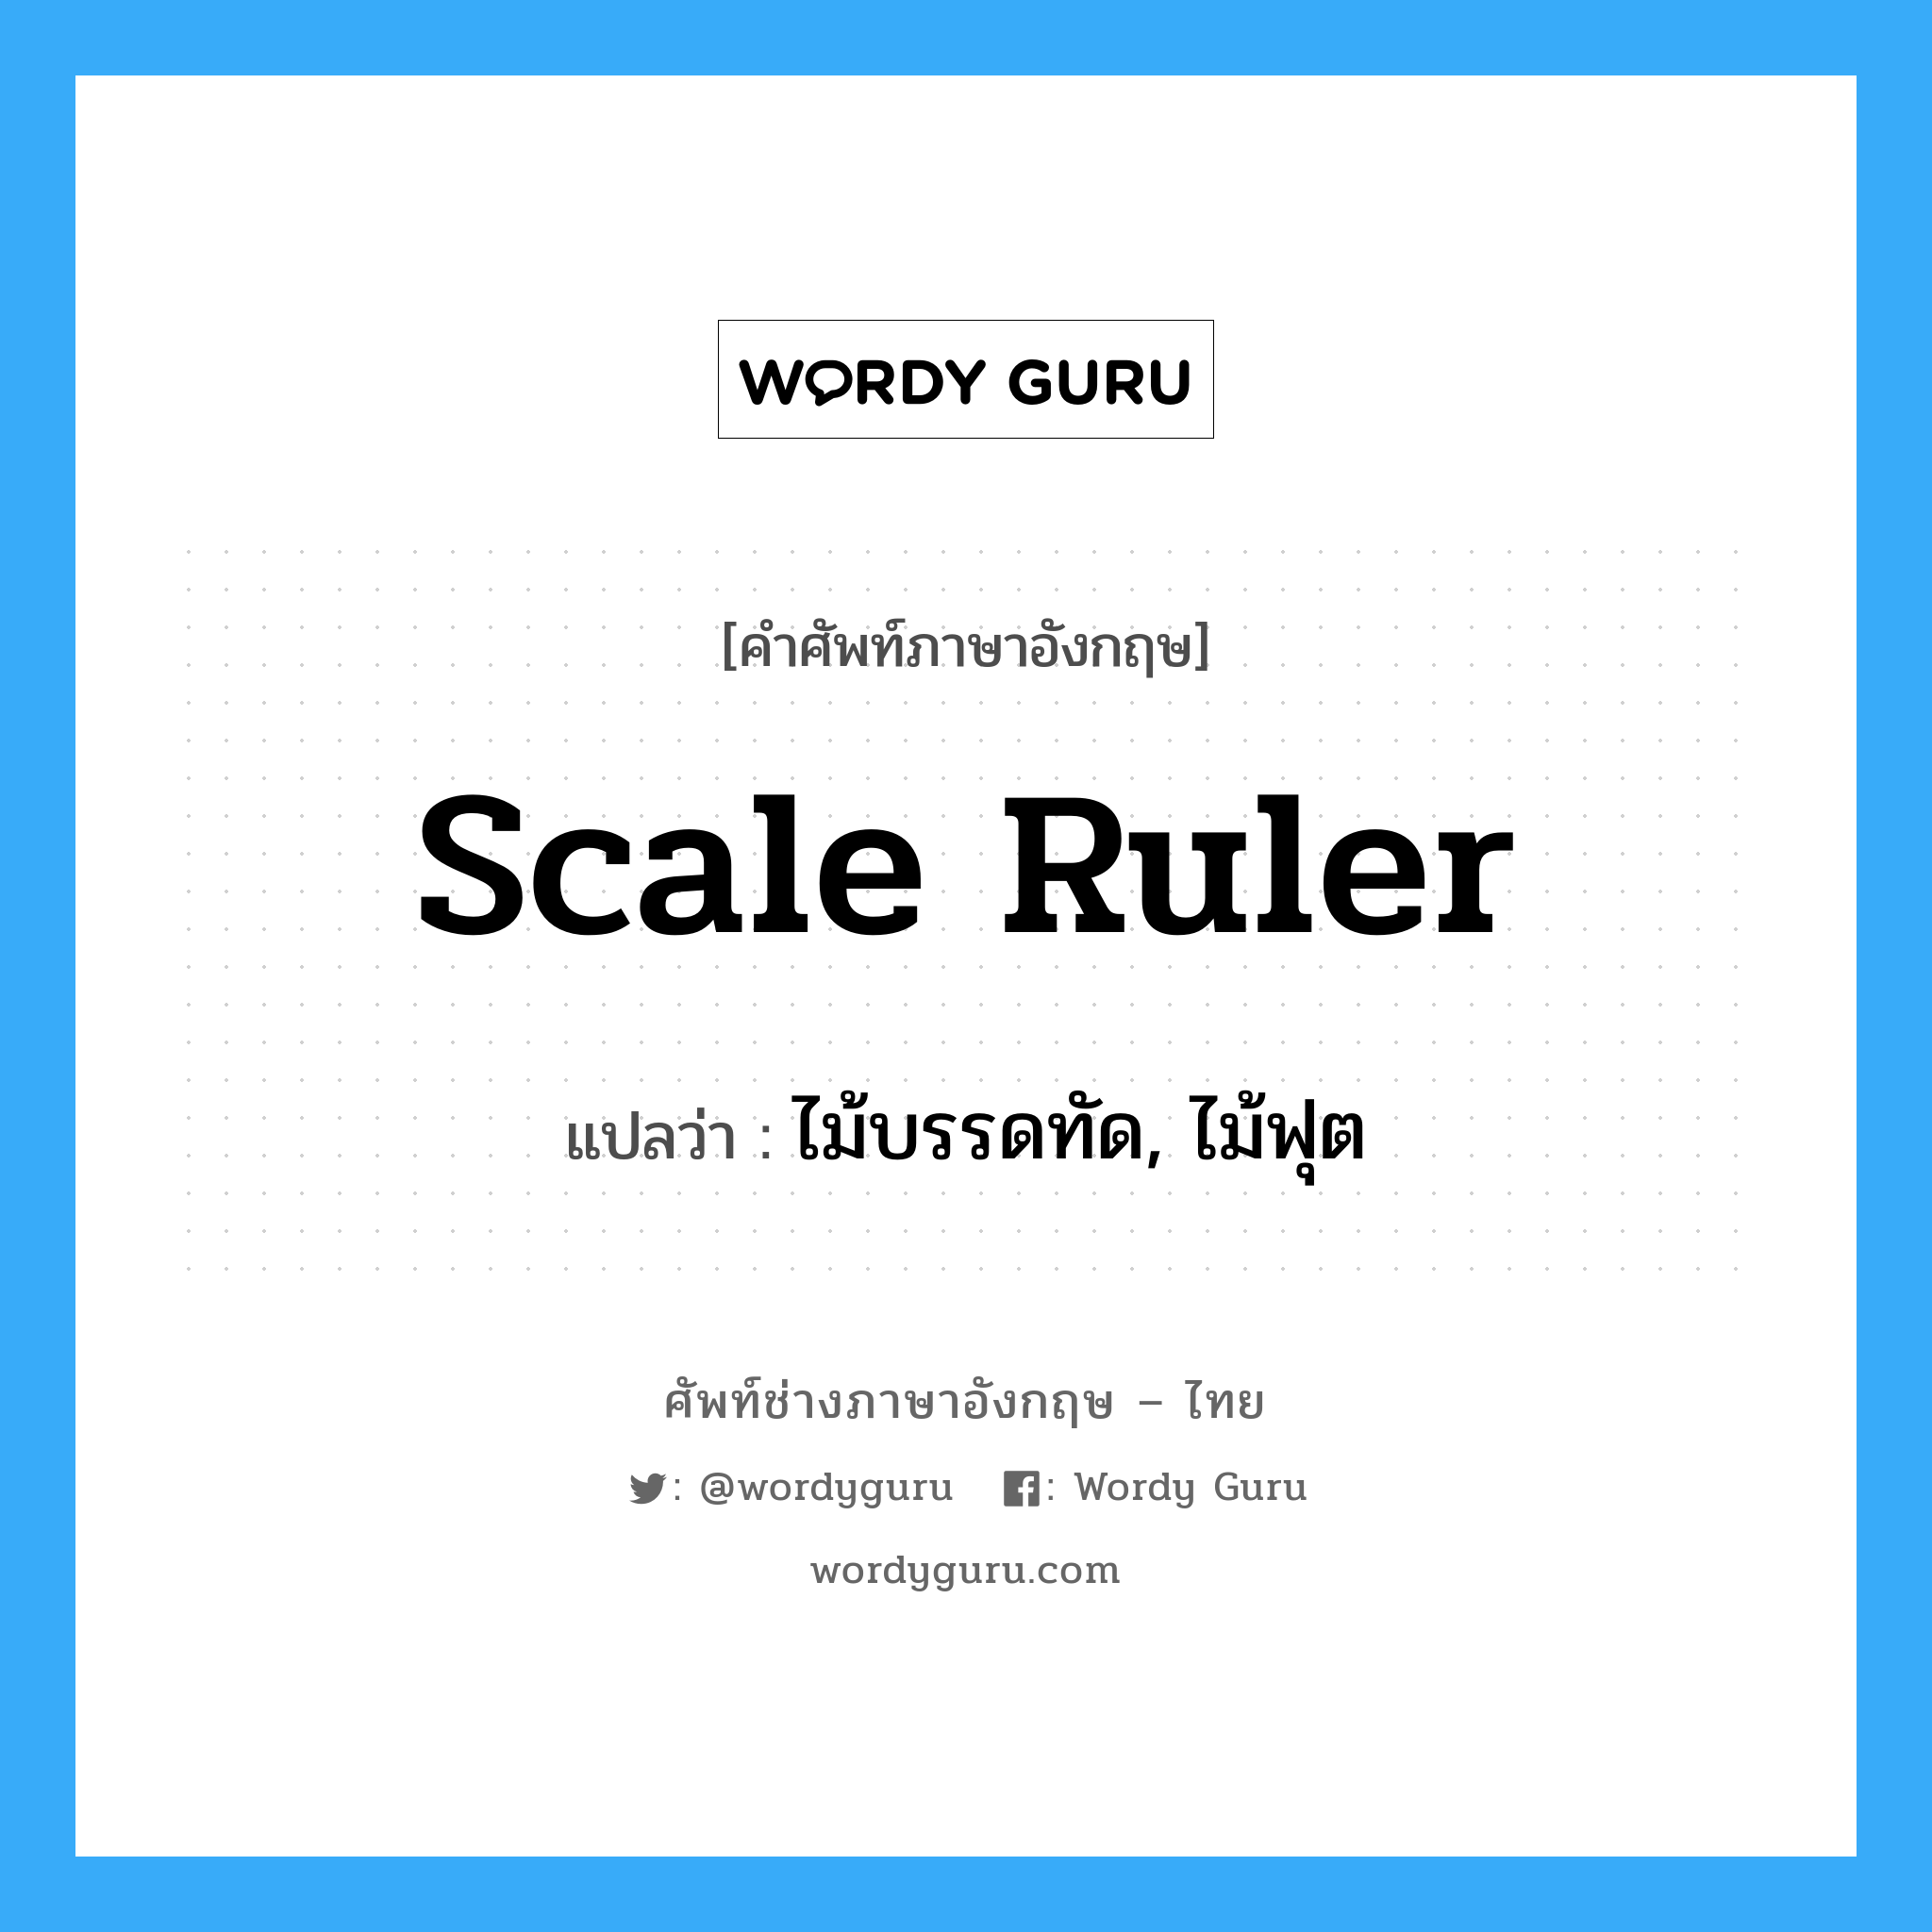 ไม้บรรดทัด, ไม้ฟุต ภาษาอังกฤษ?, คำศัพท์ช่างภาษาอังกฤษ - ไทย ไม้บรรดทัด, ไม้ฟุต คำศัพท์ภาษาอังกฤษ ไม้บรรดทัด, ไม้ฟุต แปลว่า scale ruler